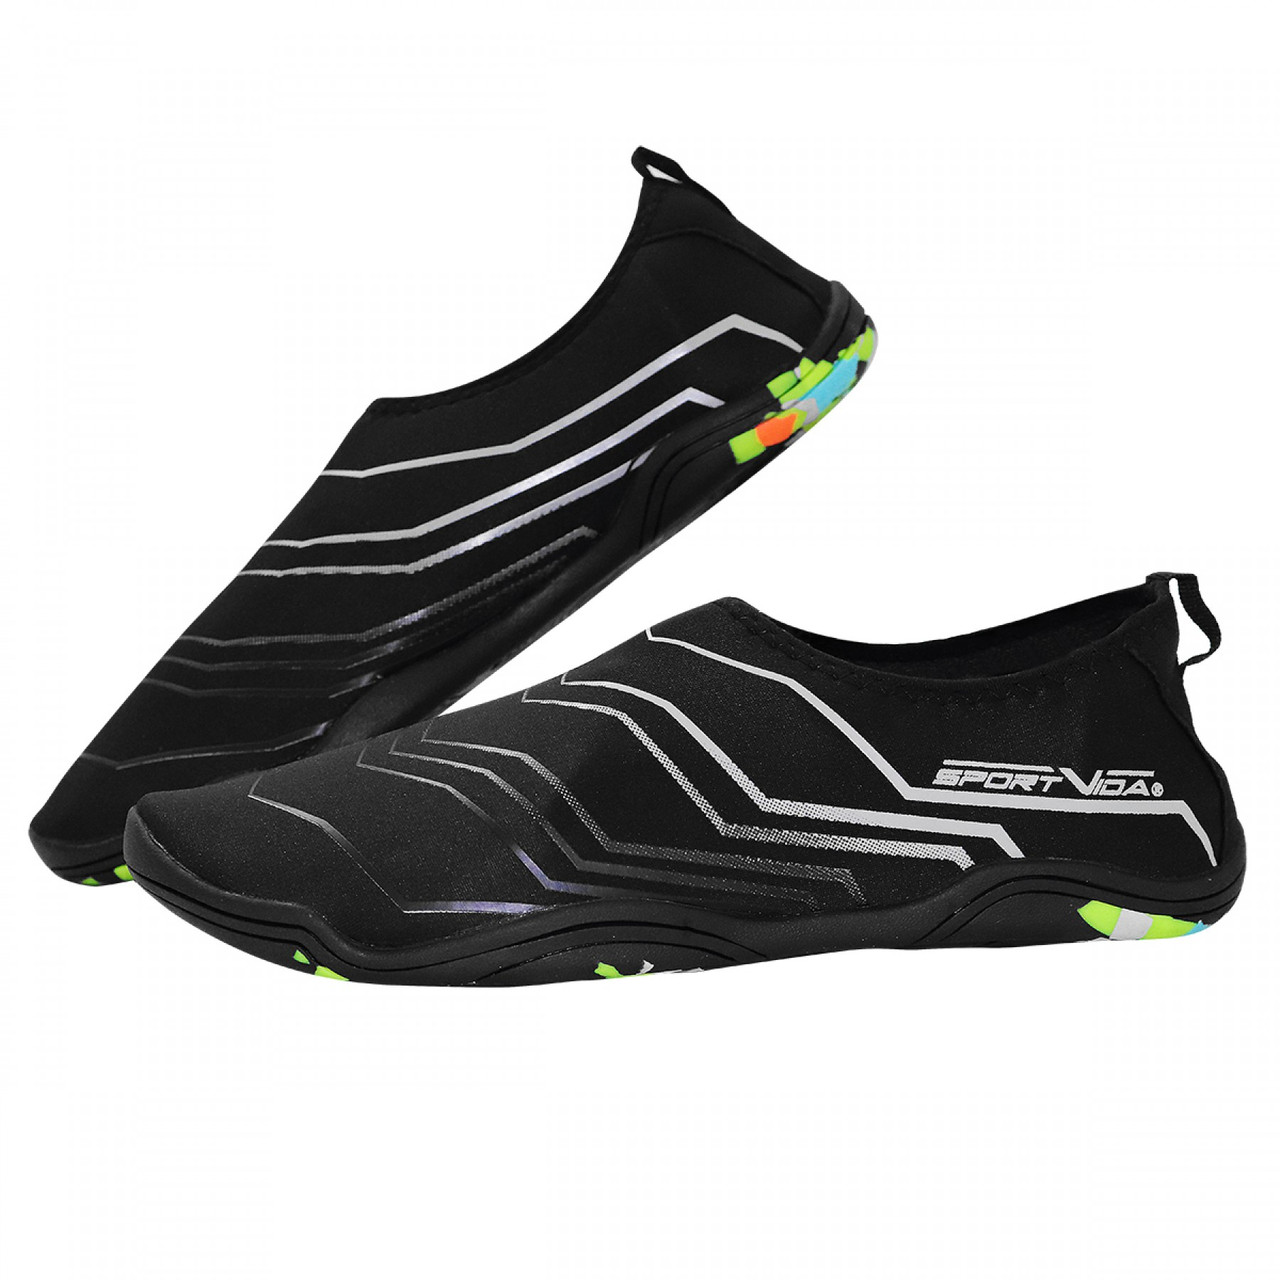 Взуття для пляжу та коралів (аквашузи) SportVida SV-GY0006-R45 Size 45 Black/Grey